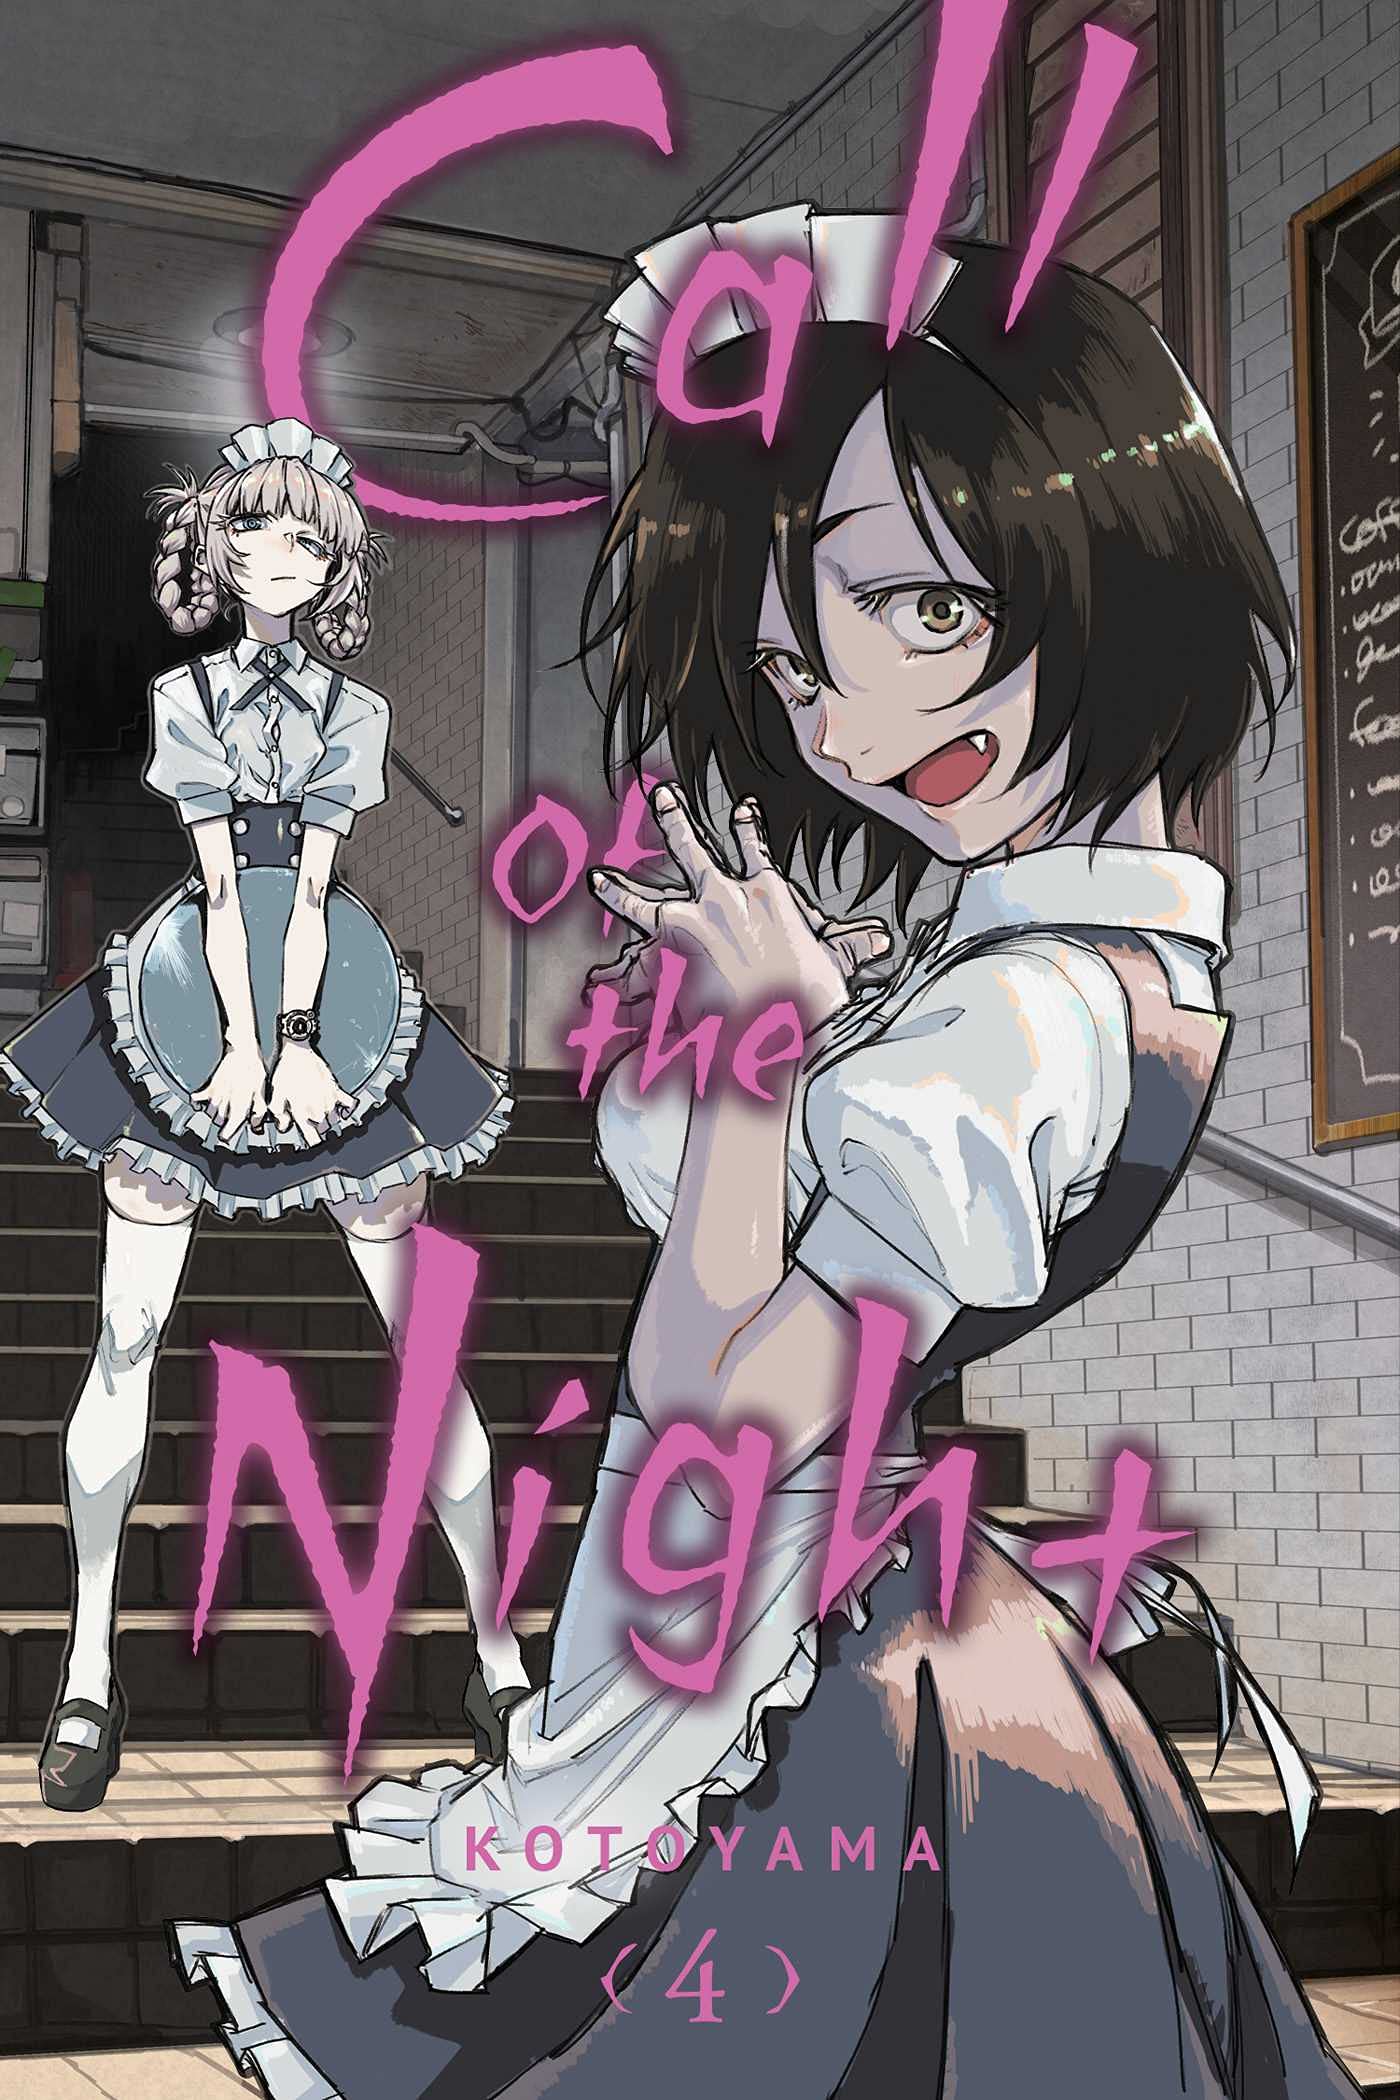 Call of the Night Manga Volume 11